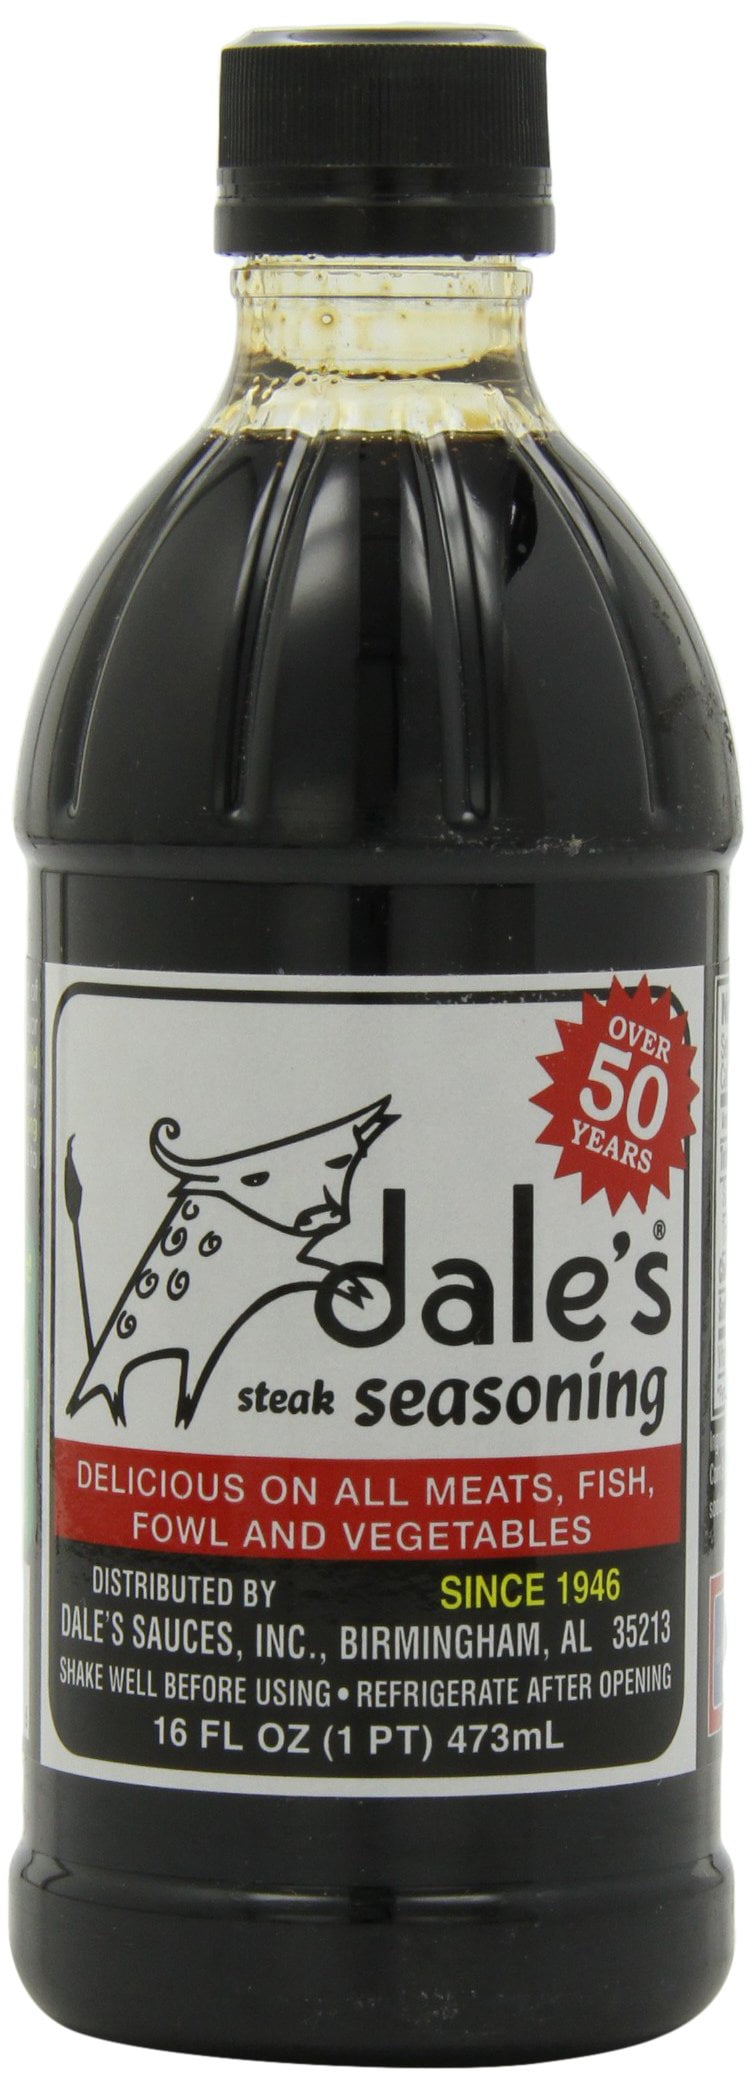 Steak Seasoning - Dale's